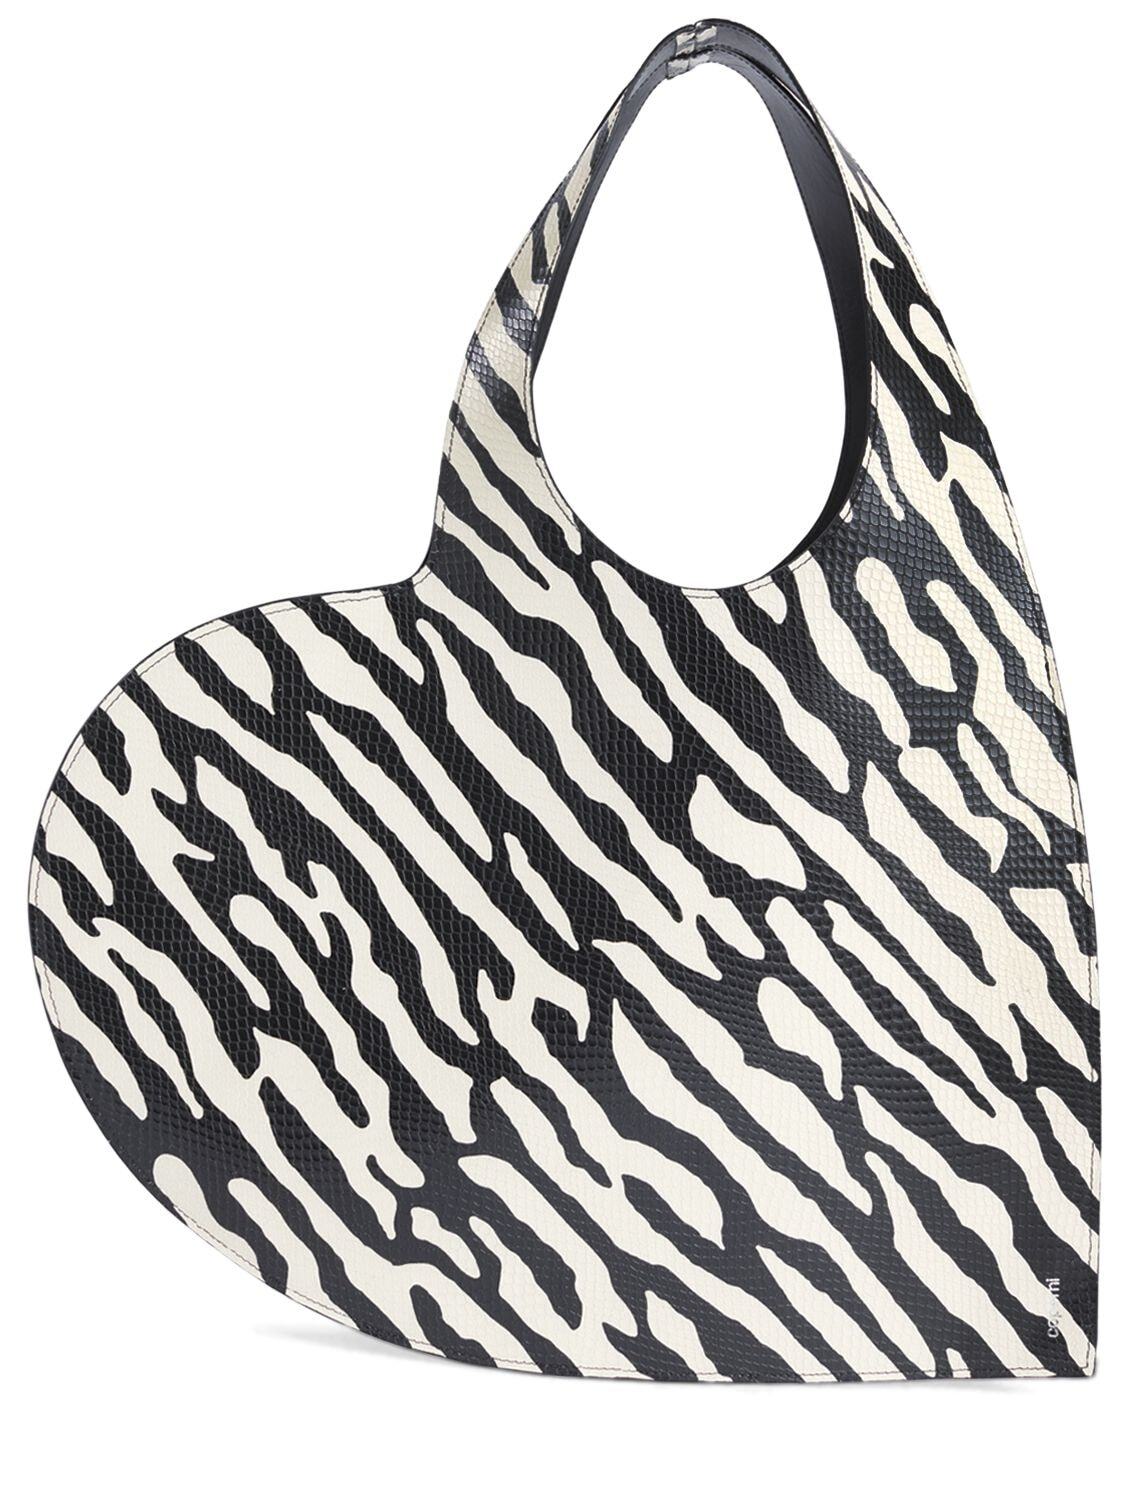 COPERNI Zebra Print Heart Shoulder Bag in black / white